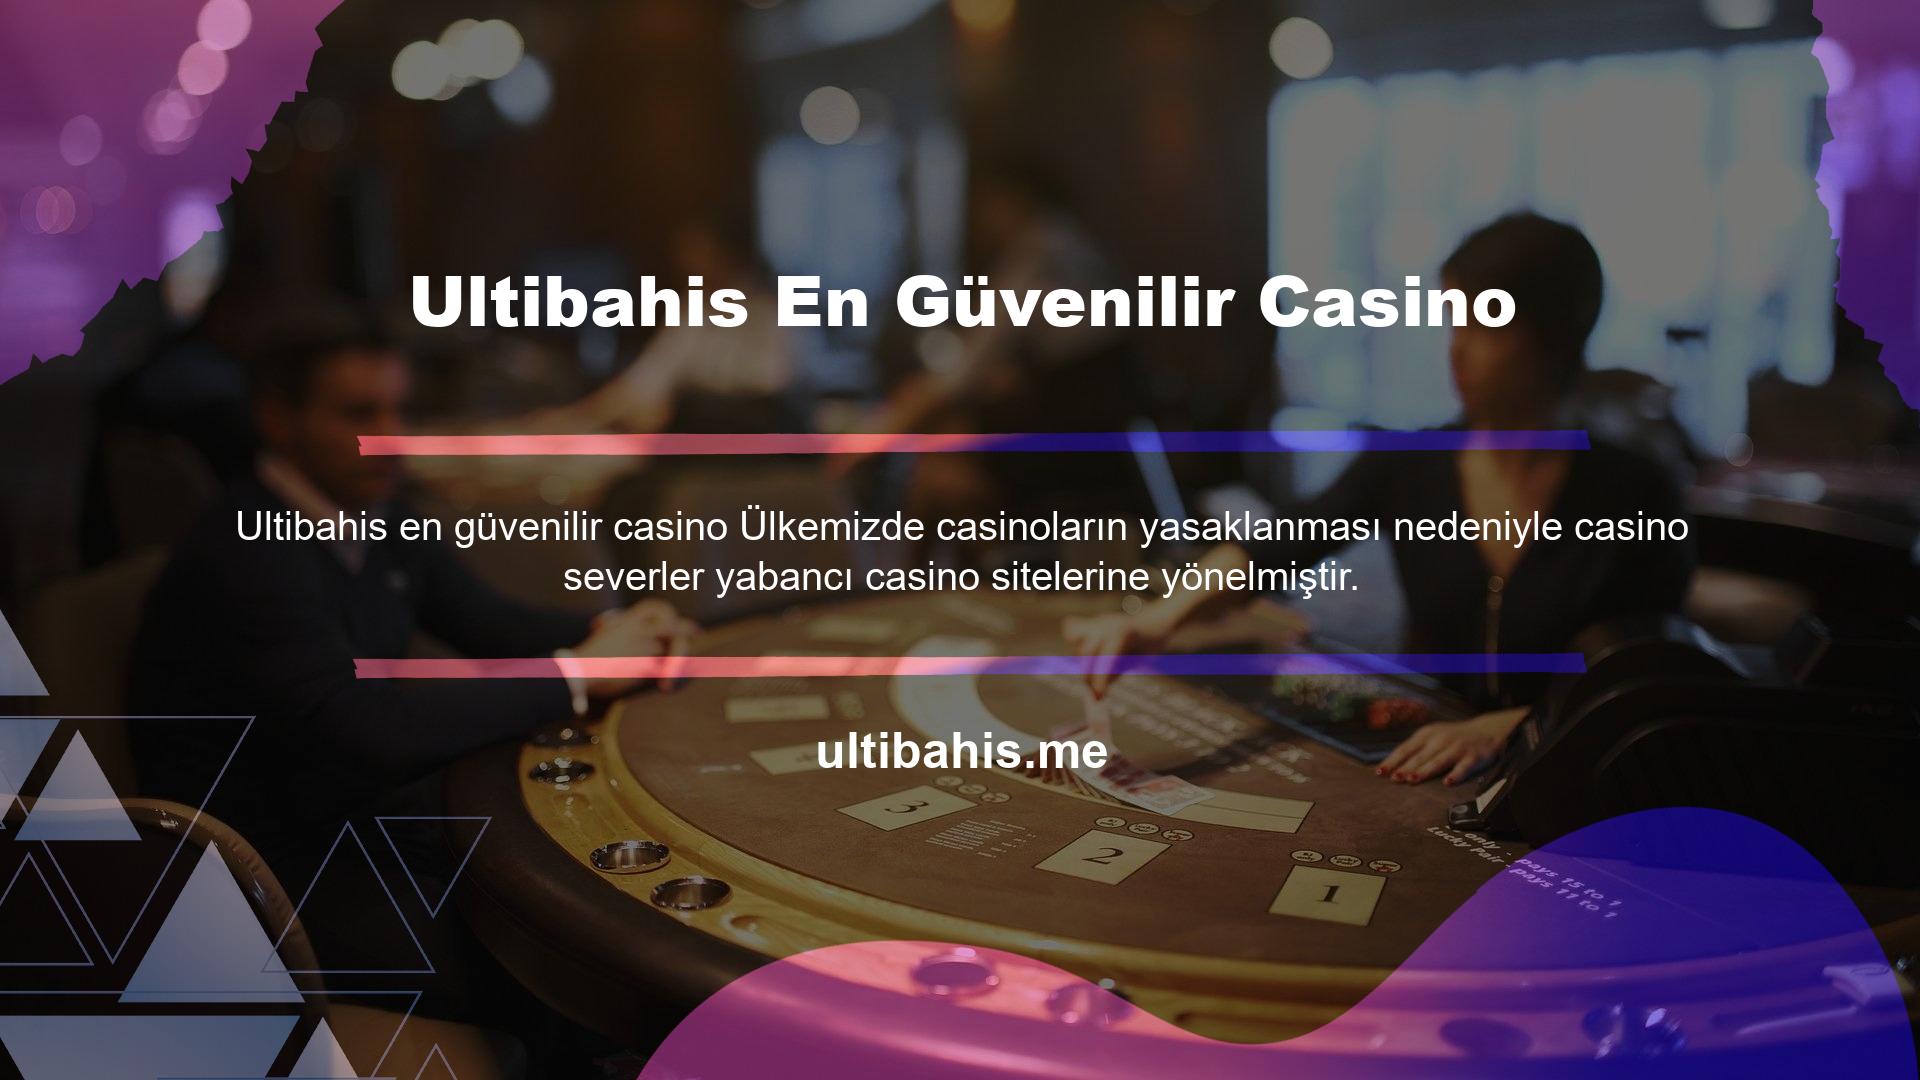 Bu konumlandırma sayesinde ülkemizde yüzden fazla canlı casino sitesi faaliyet göstermeye başlamıştır